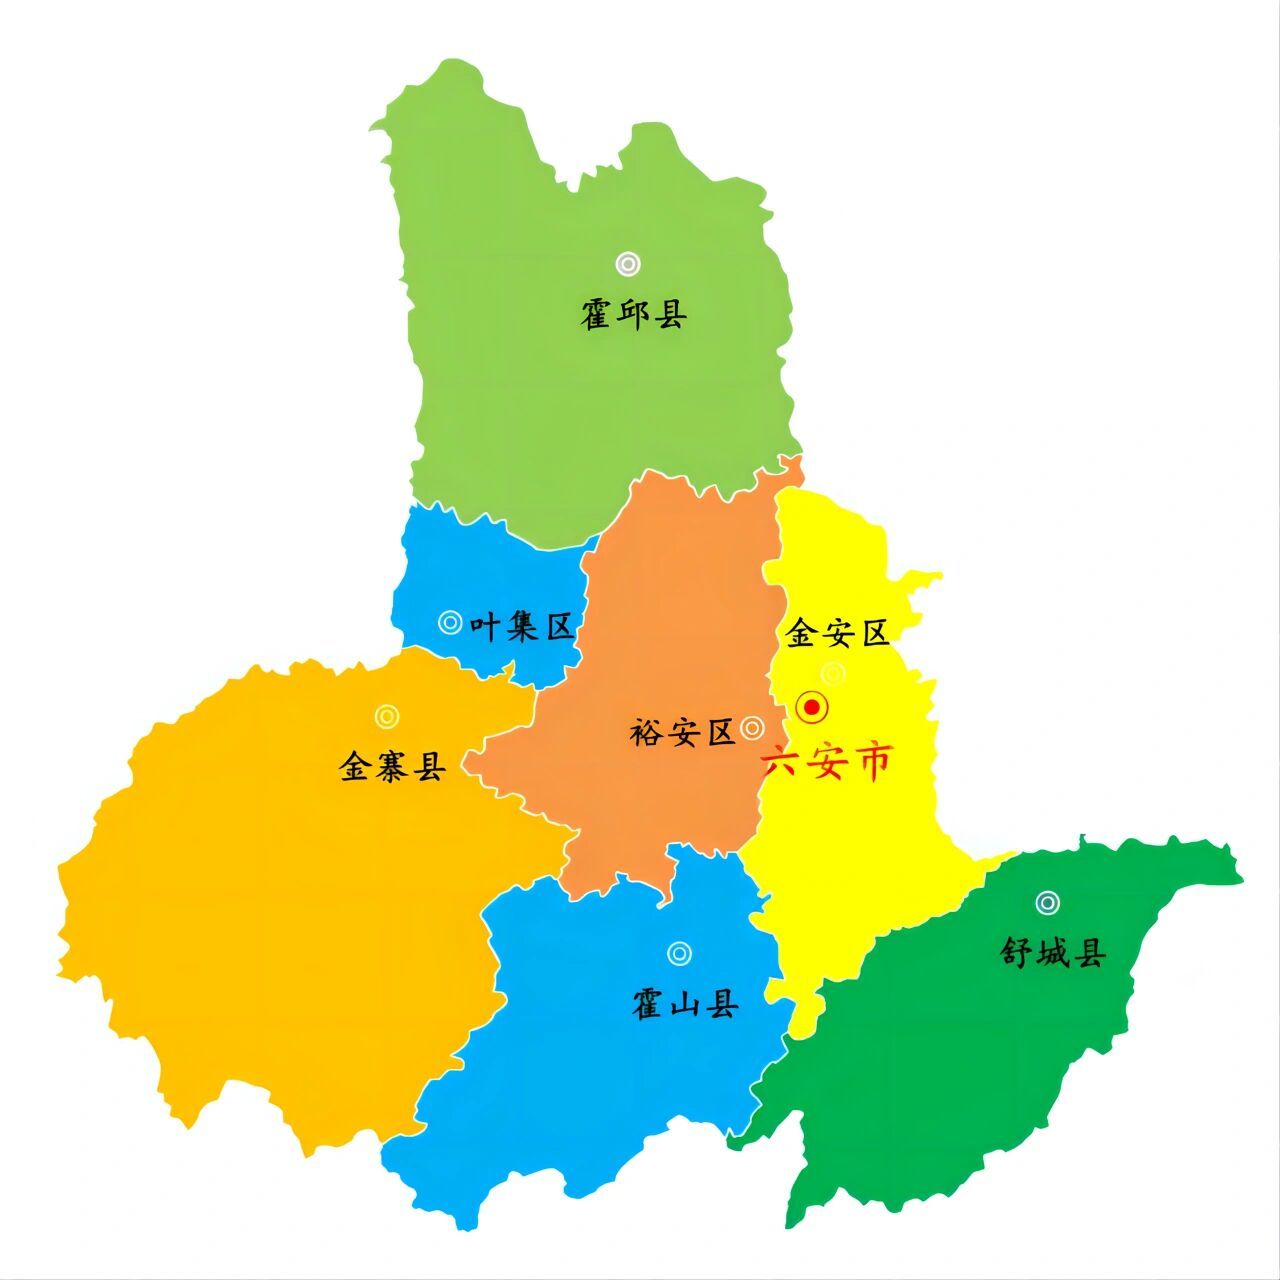 安徽省地图六安地区图片